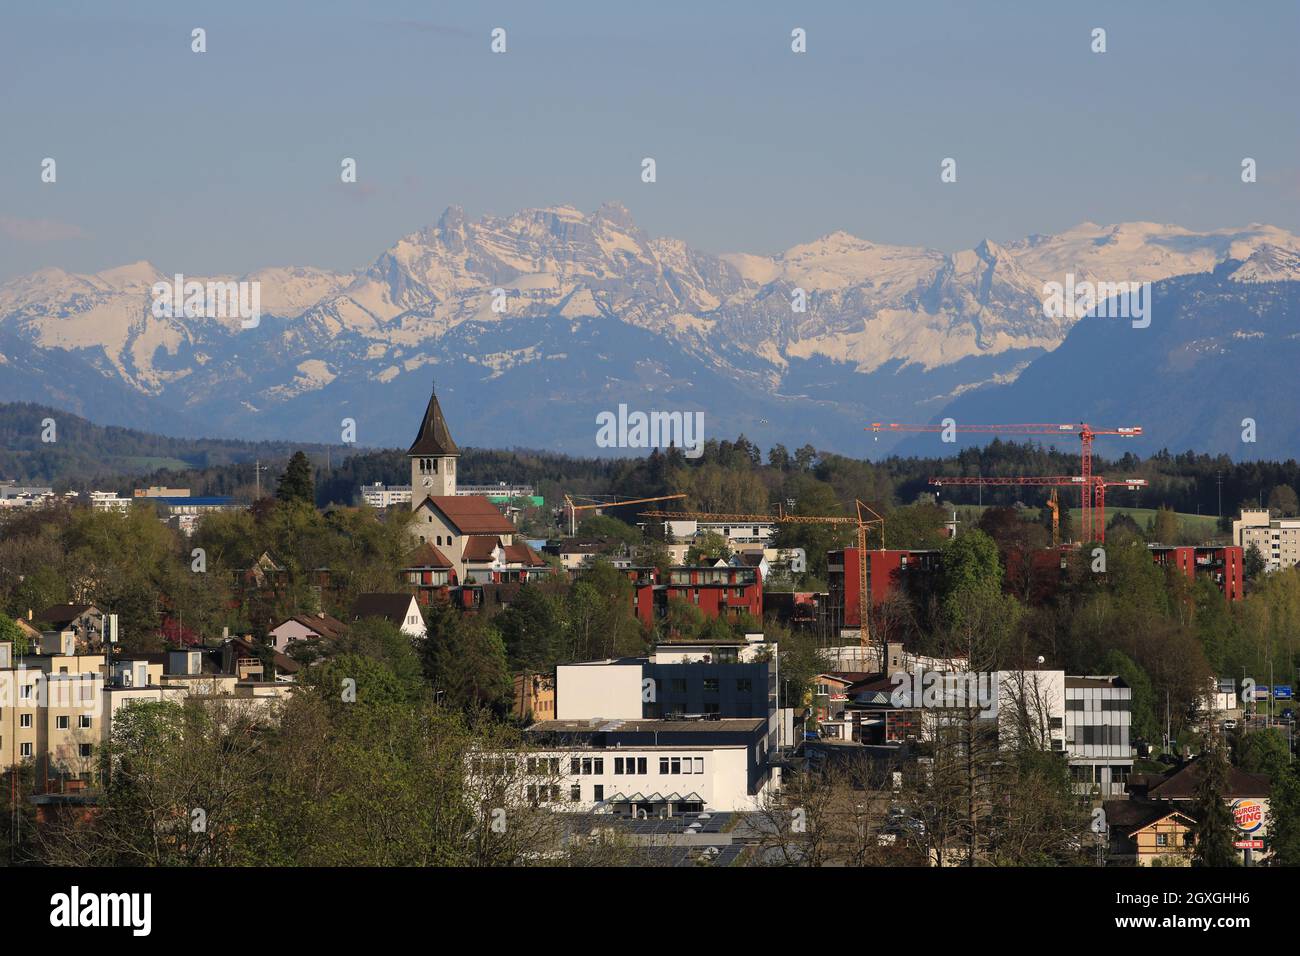 Wetzikon, town in Zurich Canton, Switzerland. Stock Photo